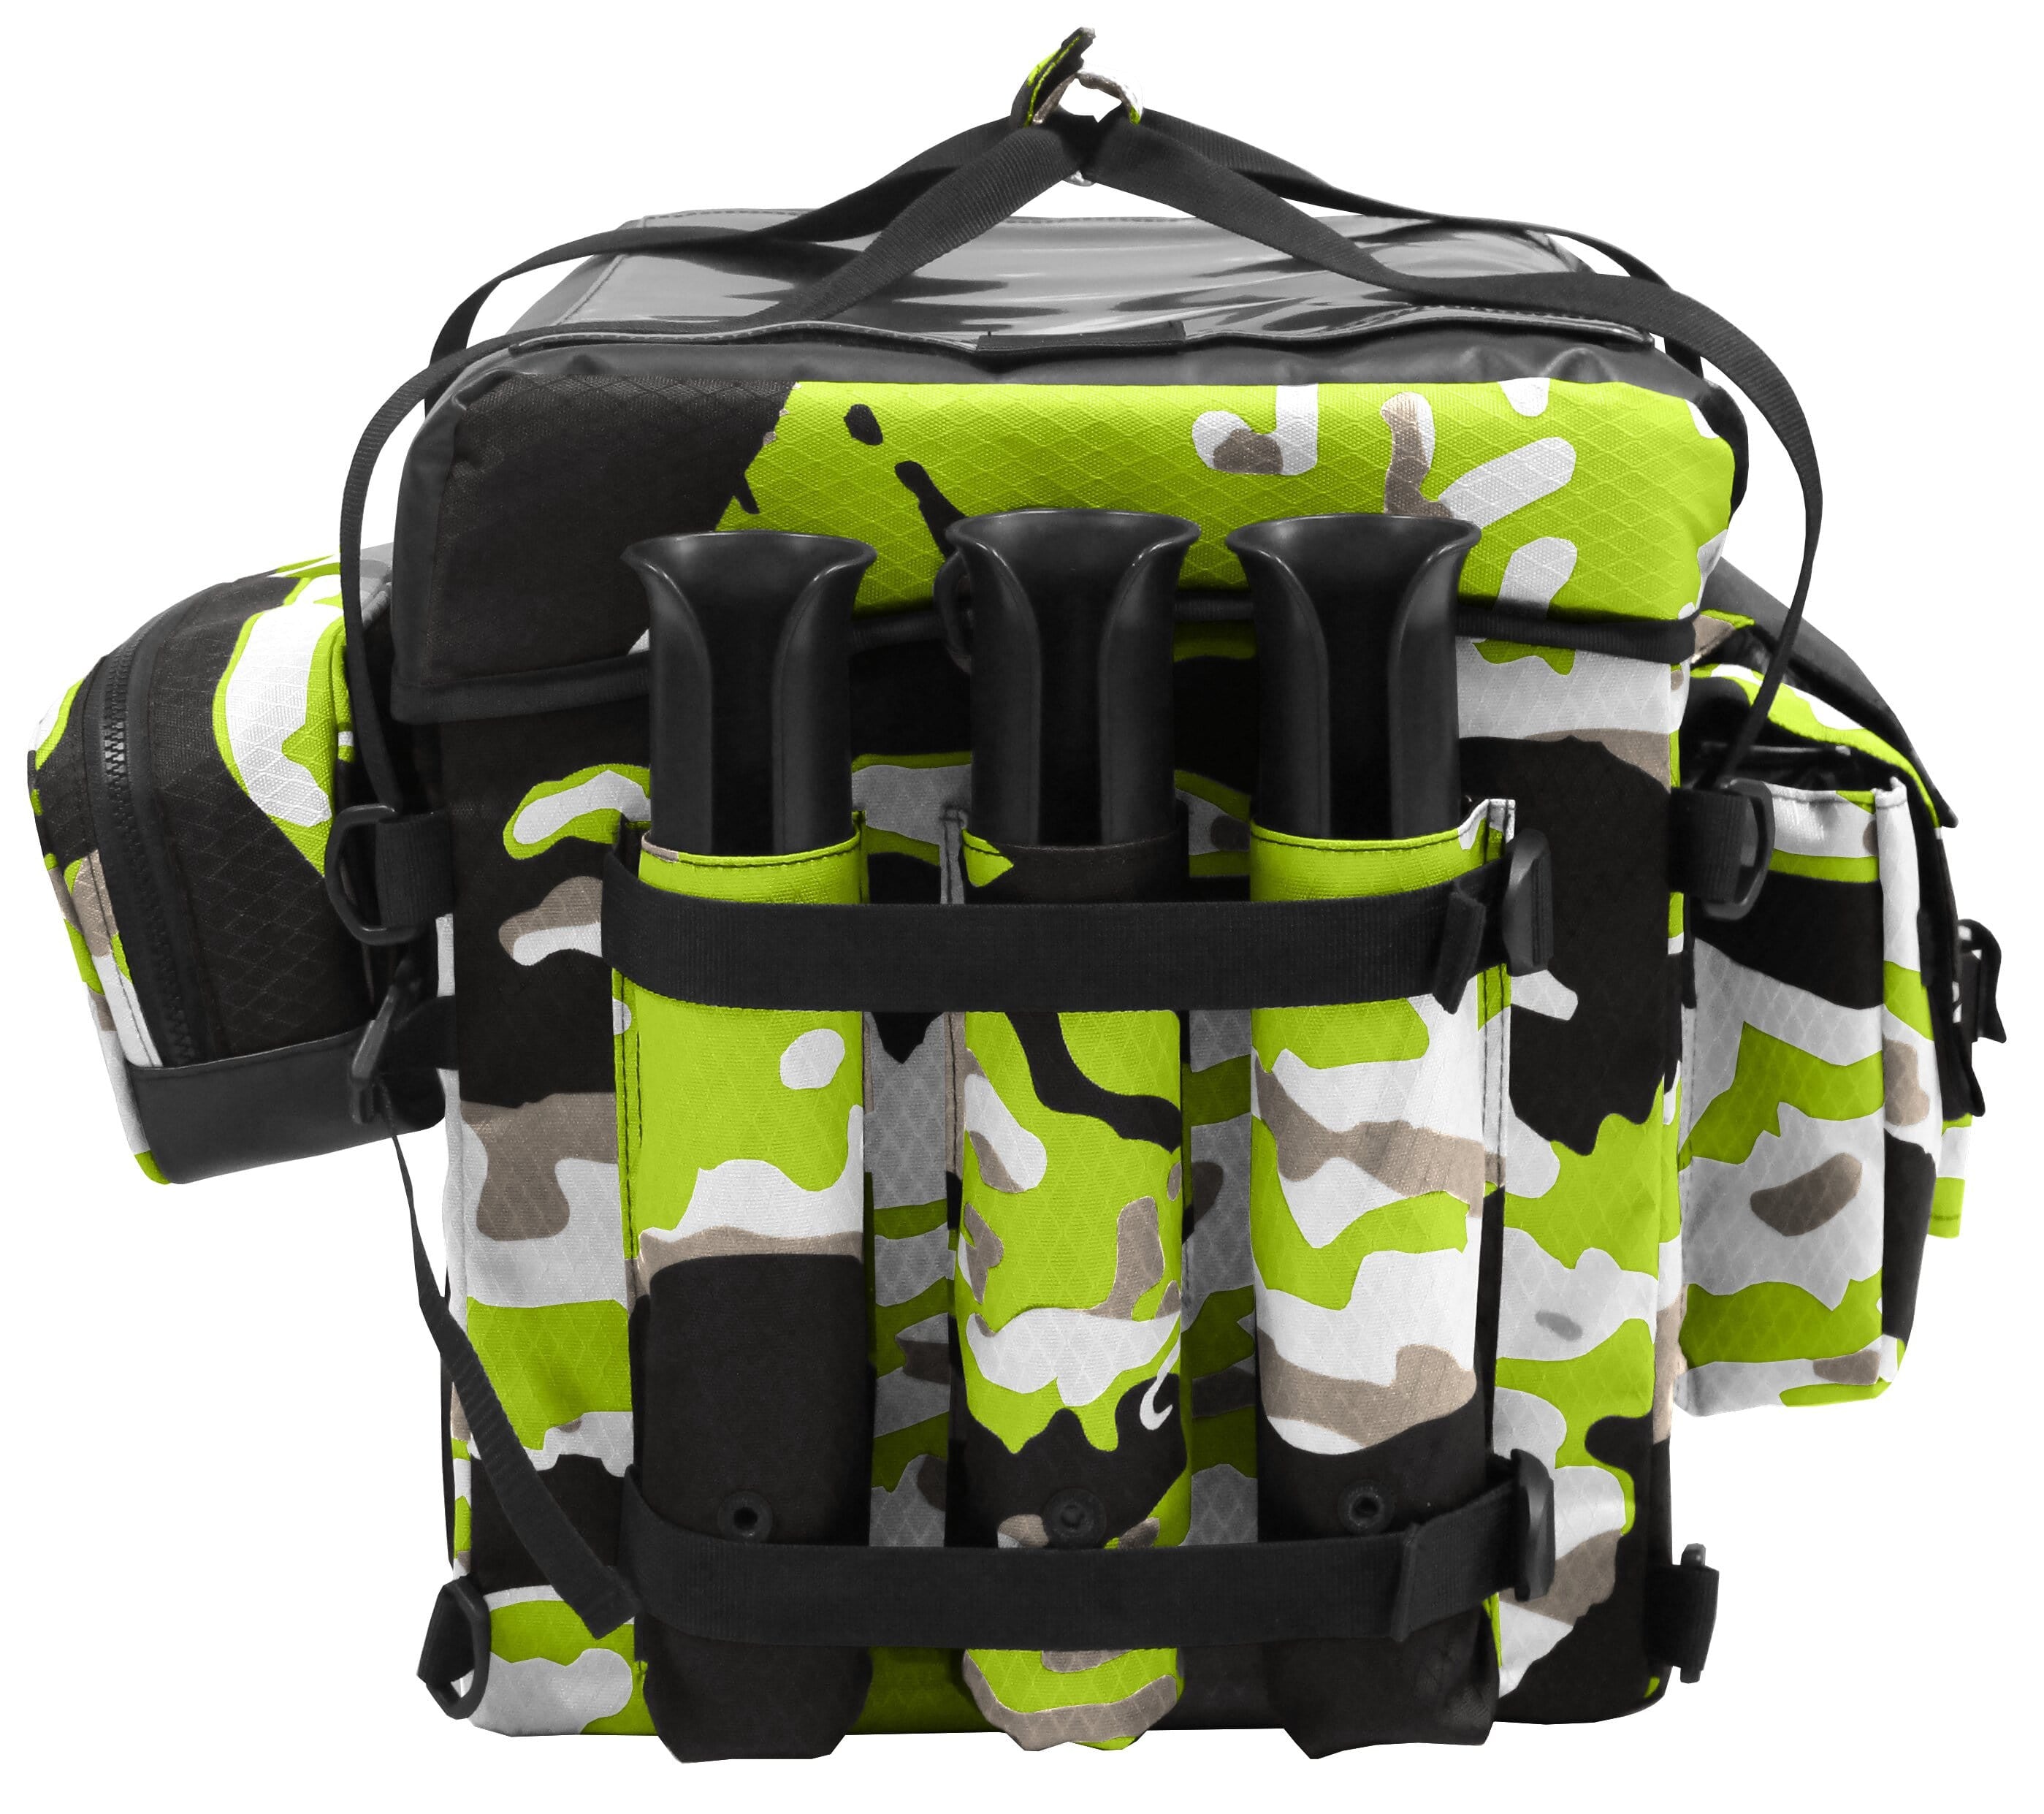 Feelfree Camo Crate Bag for Fishing Kayaks